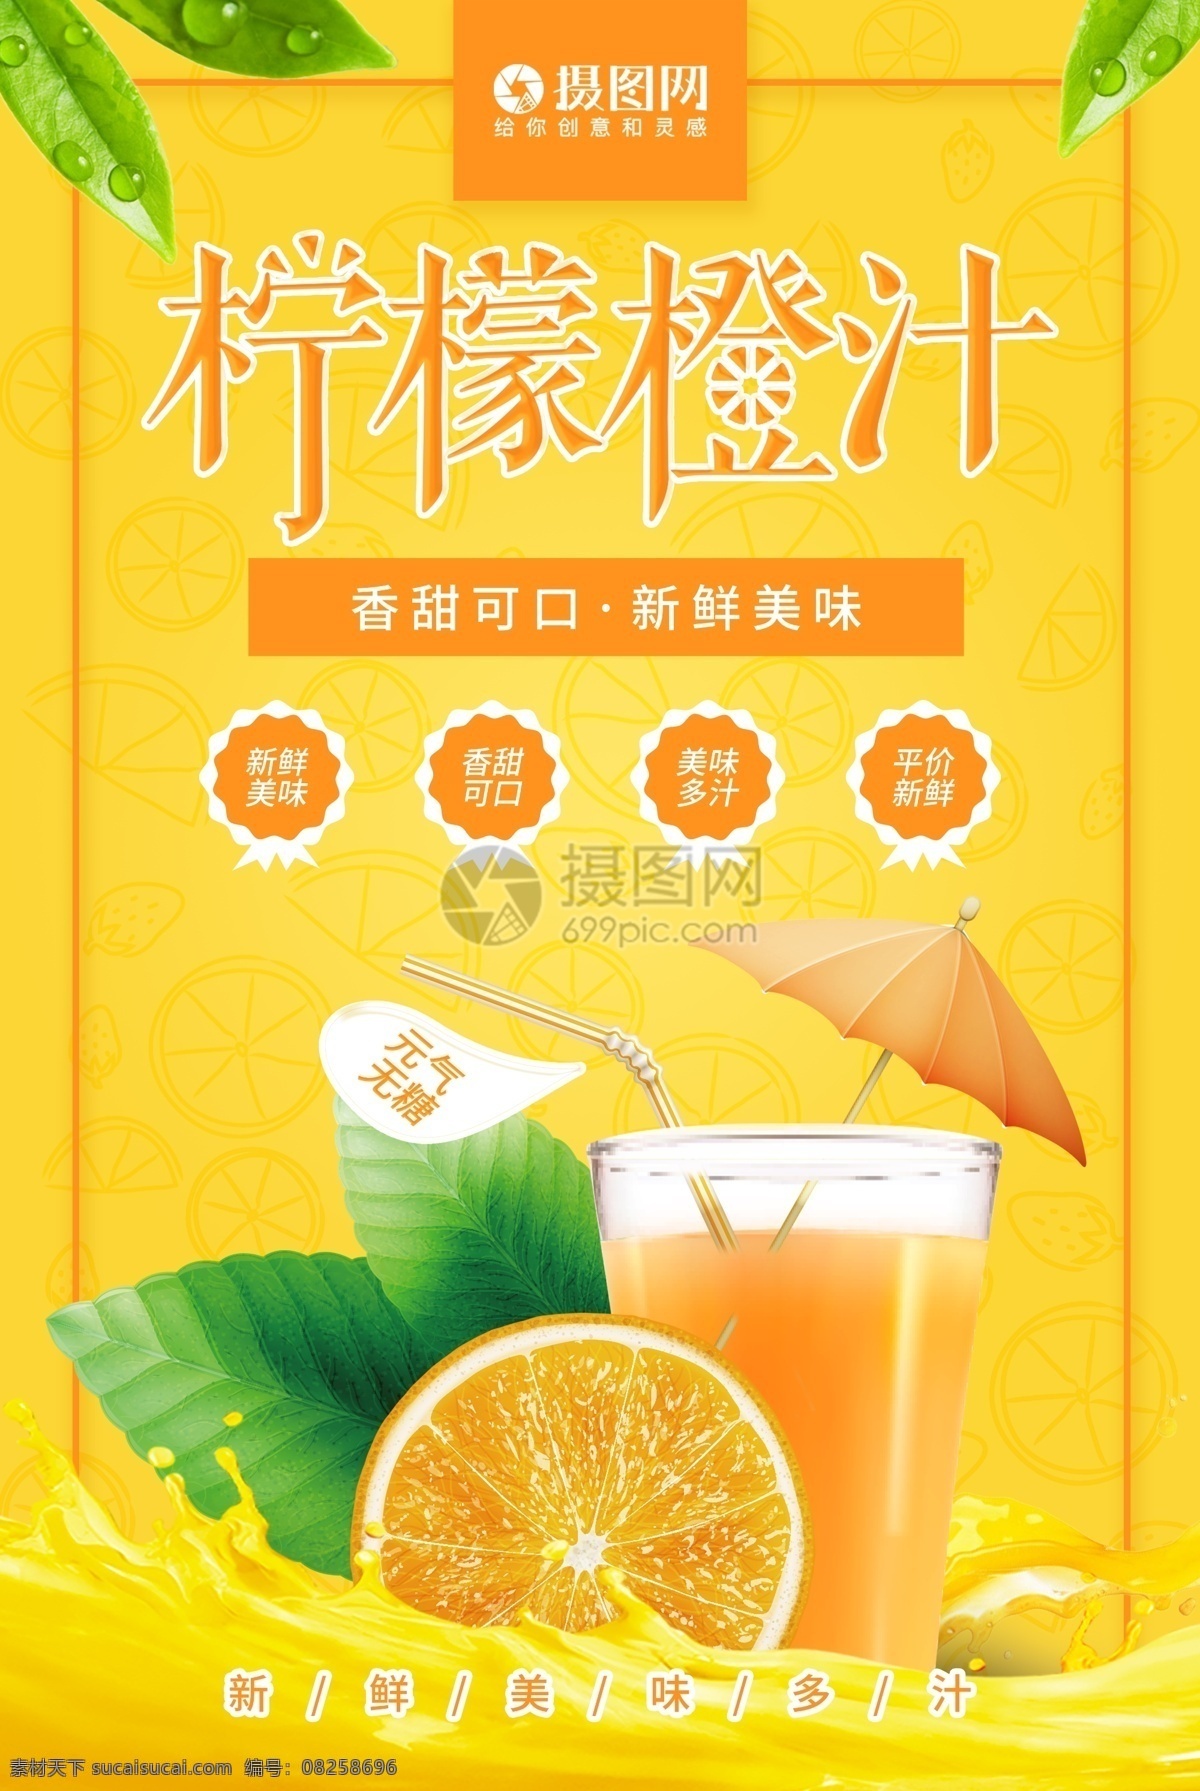 黄色 柠檬 橙汁 促销 海报 柠檬橙汁海报 柠檬海报 橙子海报 促销海报 水果 水果海报 新鲜无糖 水果汁 美食 果汁促销 清凉冷饮